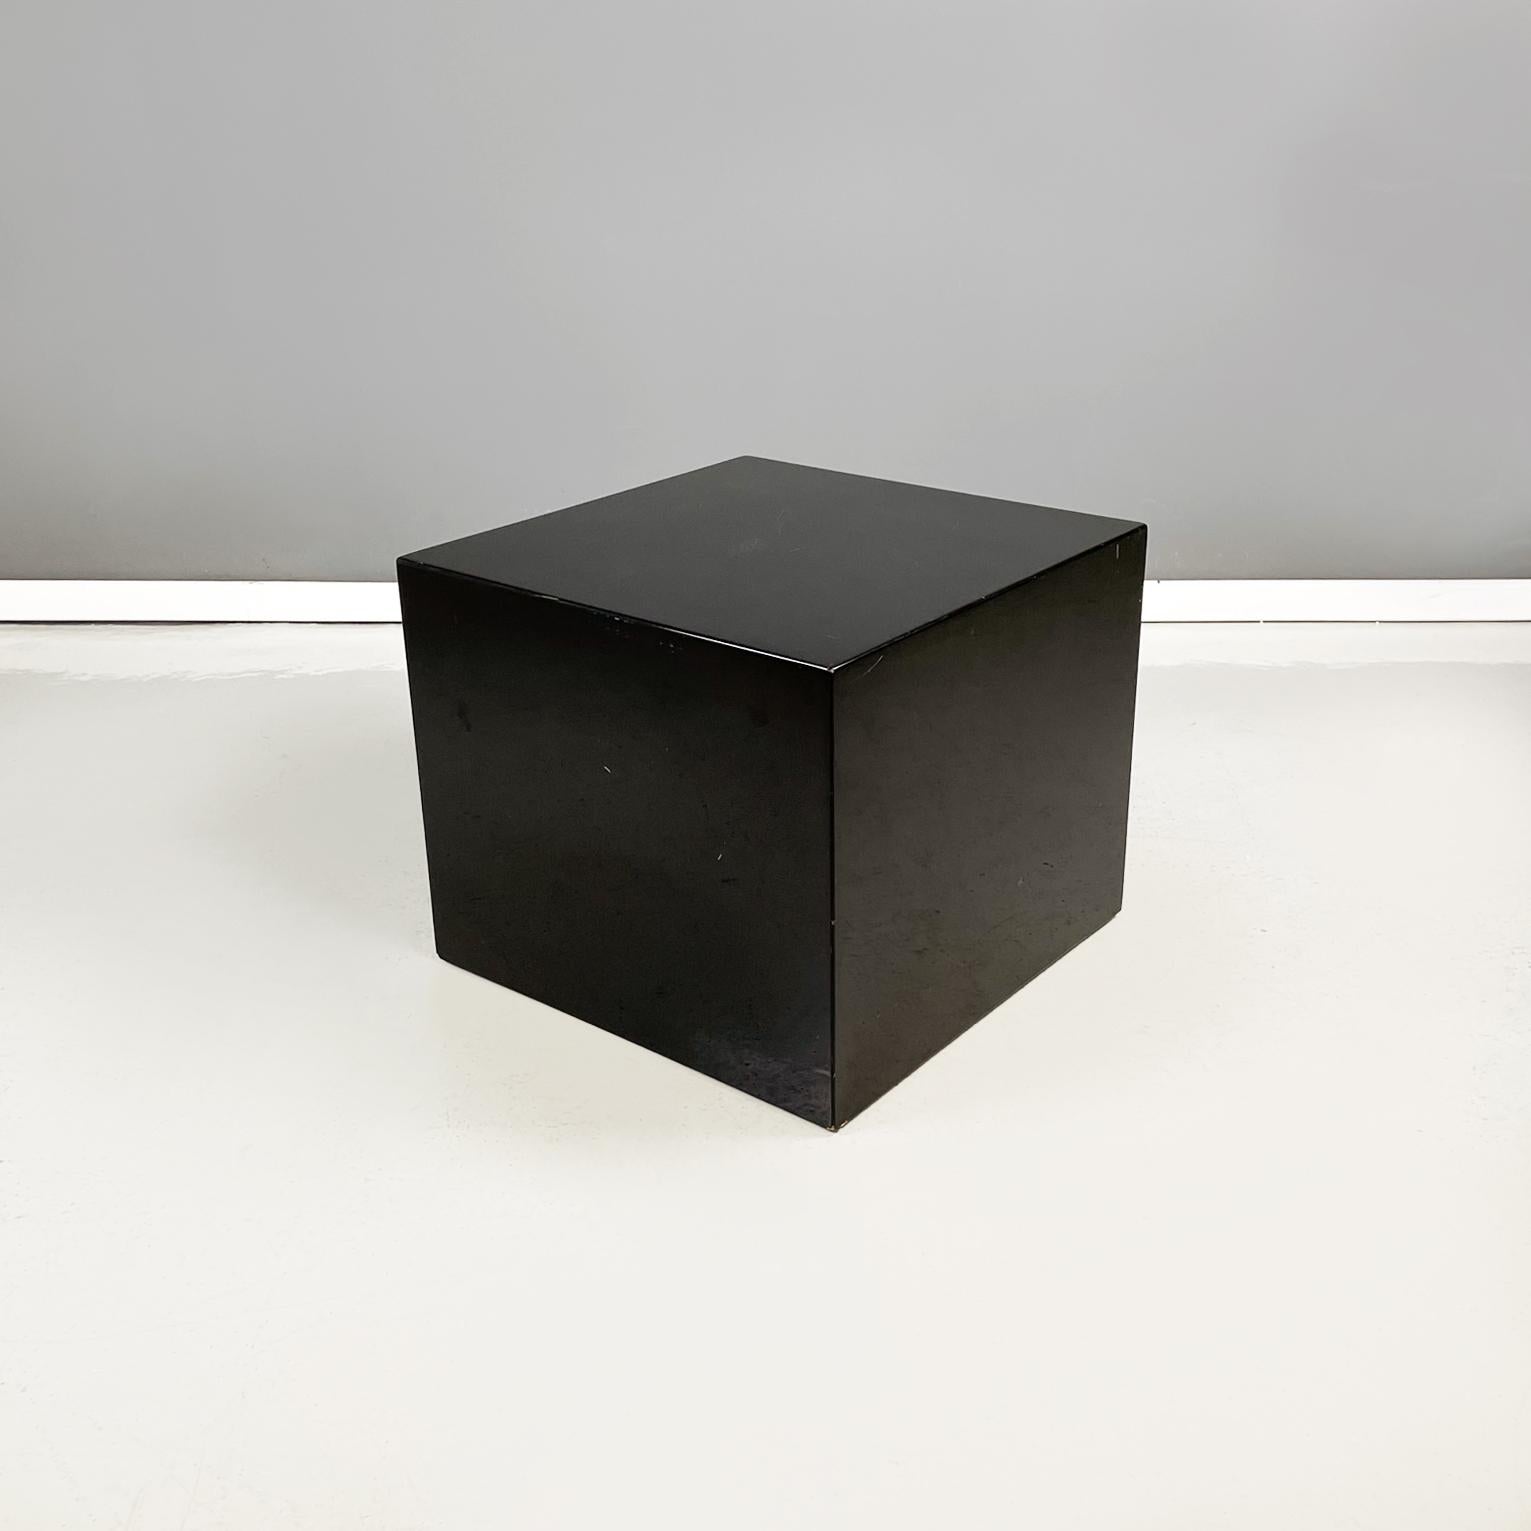 Italienische moderne Steh- oder Couchtische aus schwarz lackiertem Holz, 1990er Jahre
Paar Couchtische mit quadratischer Platte, ganz aus schwarz lackiertem Holz. Die Kanten des Tisches sind abgerundet. An der Basis befinden sich Räder. Sie können